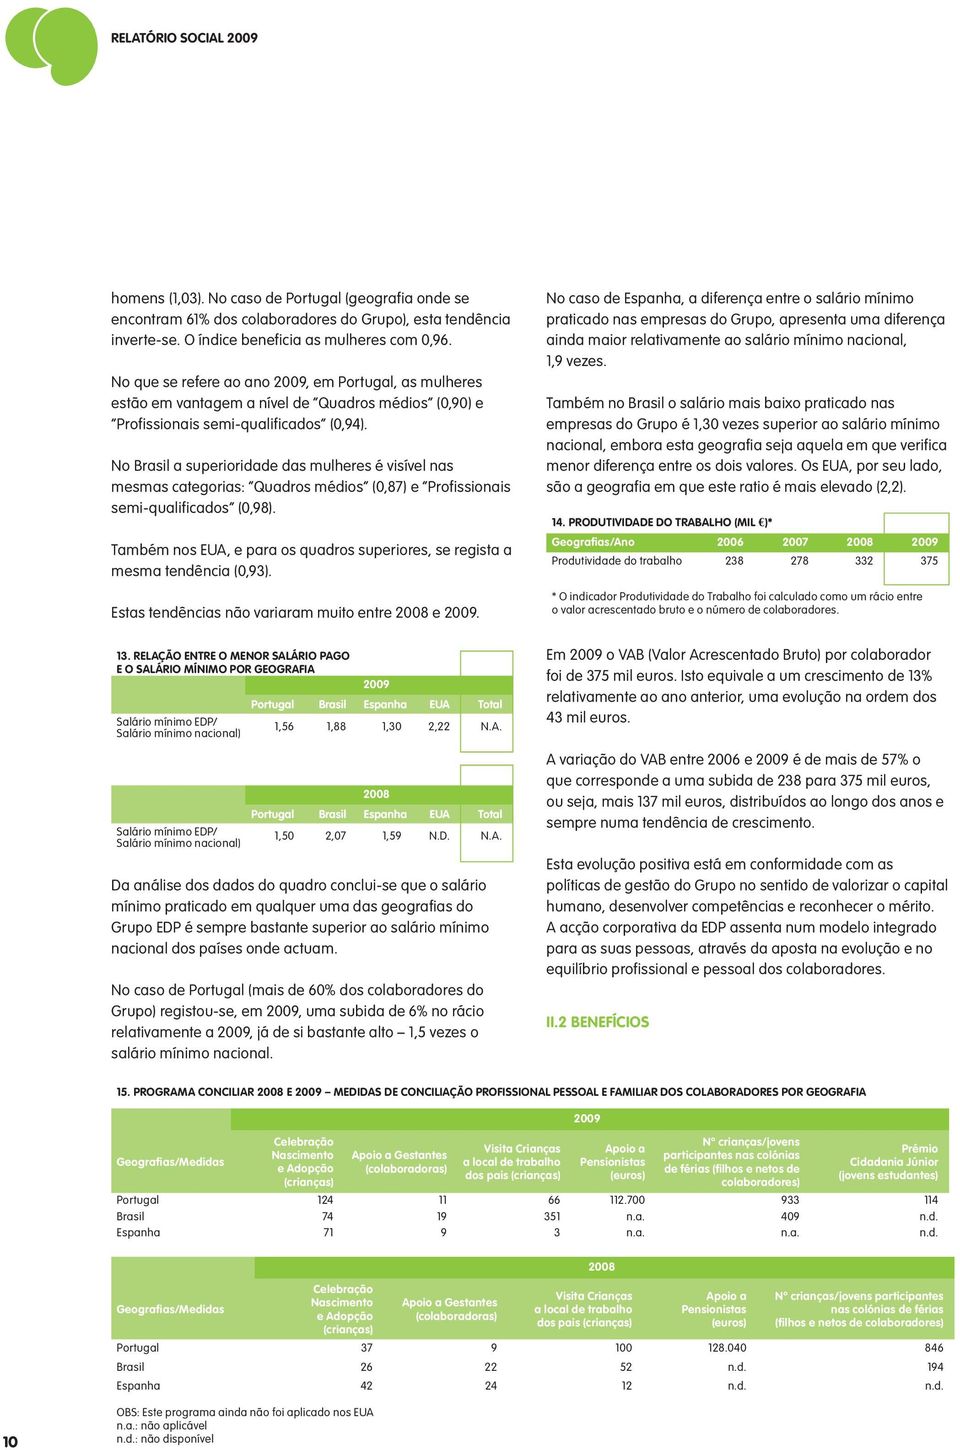 No Brasil a superioridade das mulheres é visível nas mesmas categorias: Quadros médios (0,87) e Profissionais semi-qualificados (0,98).